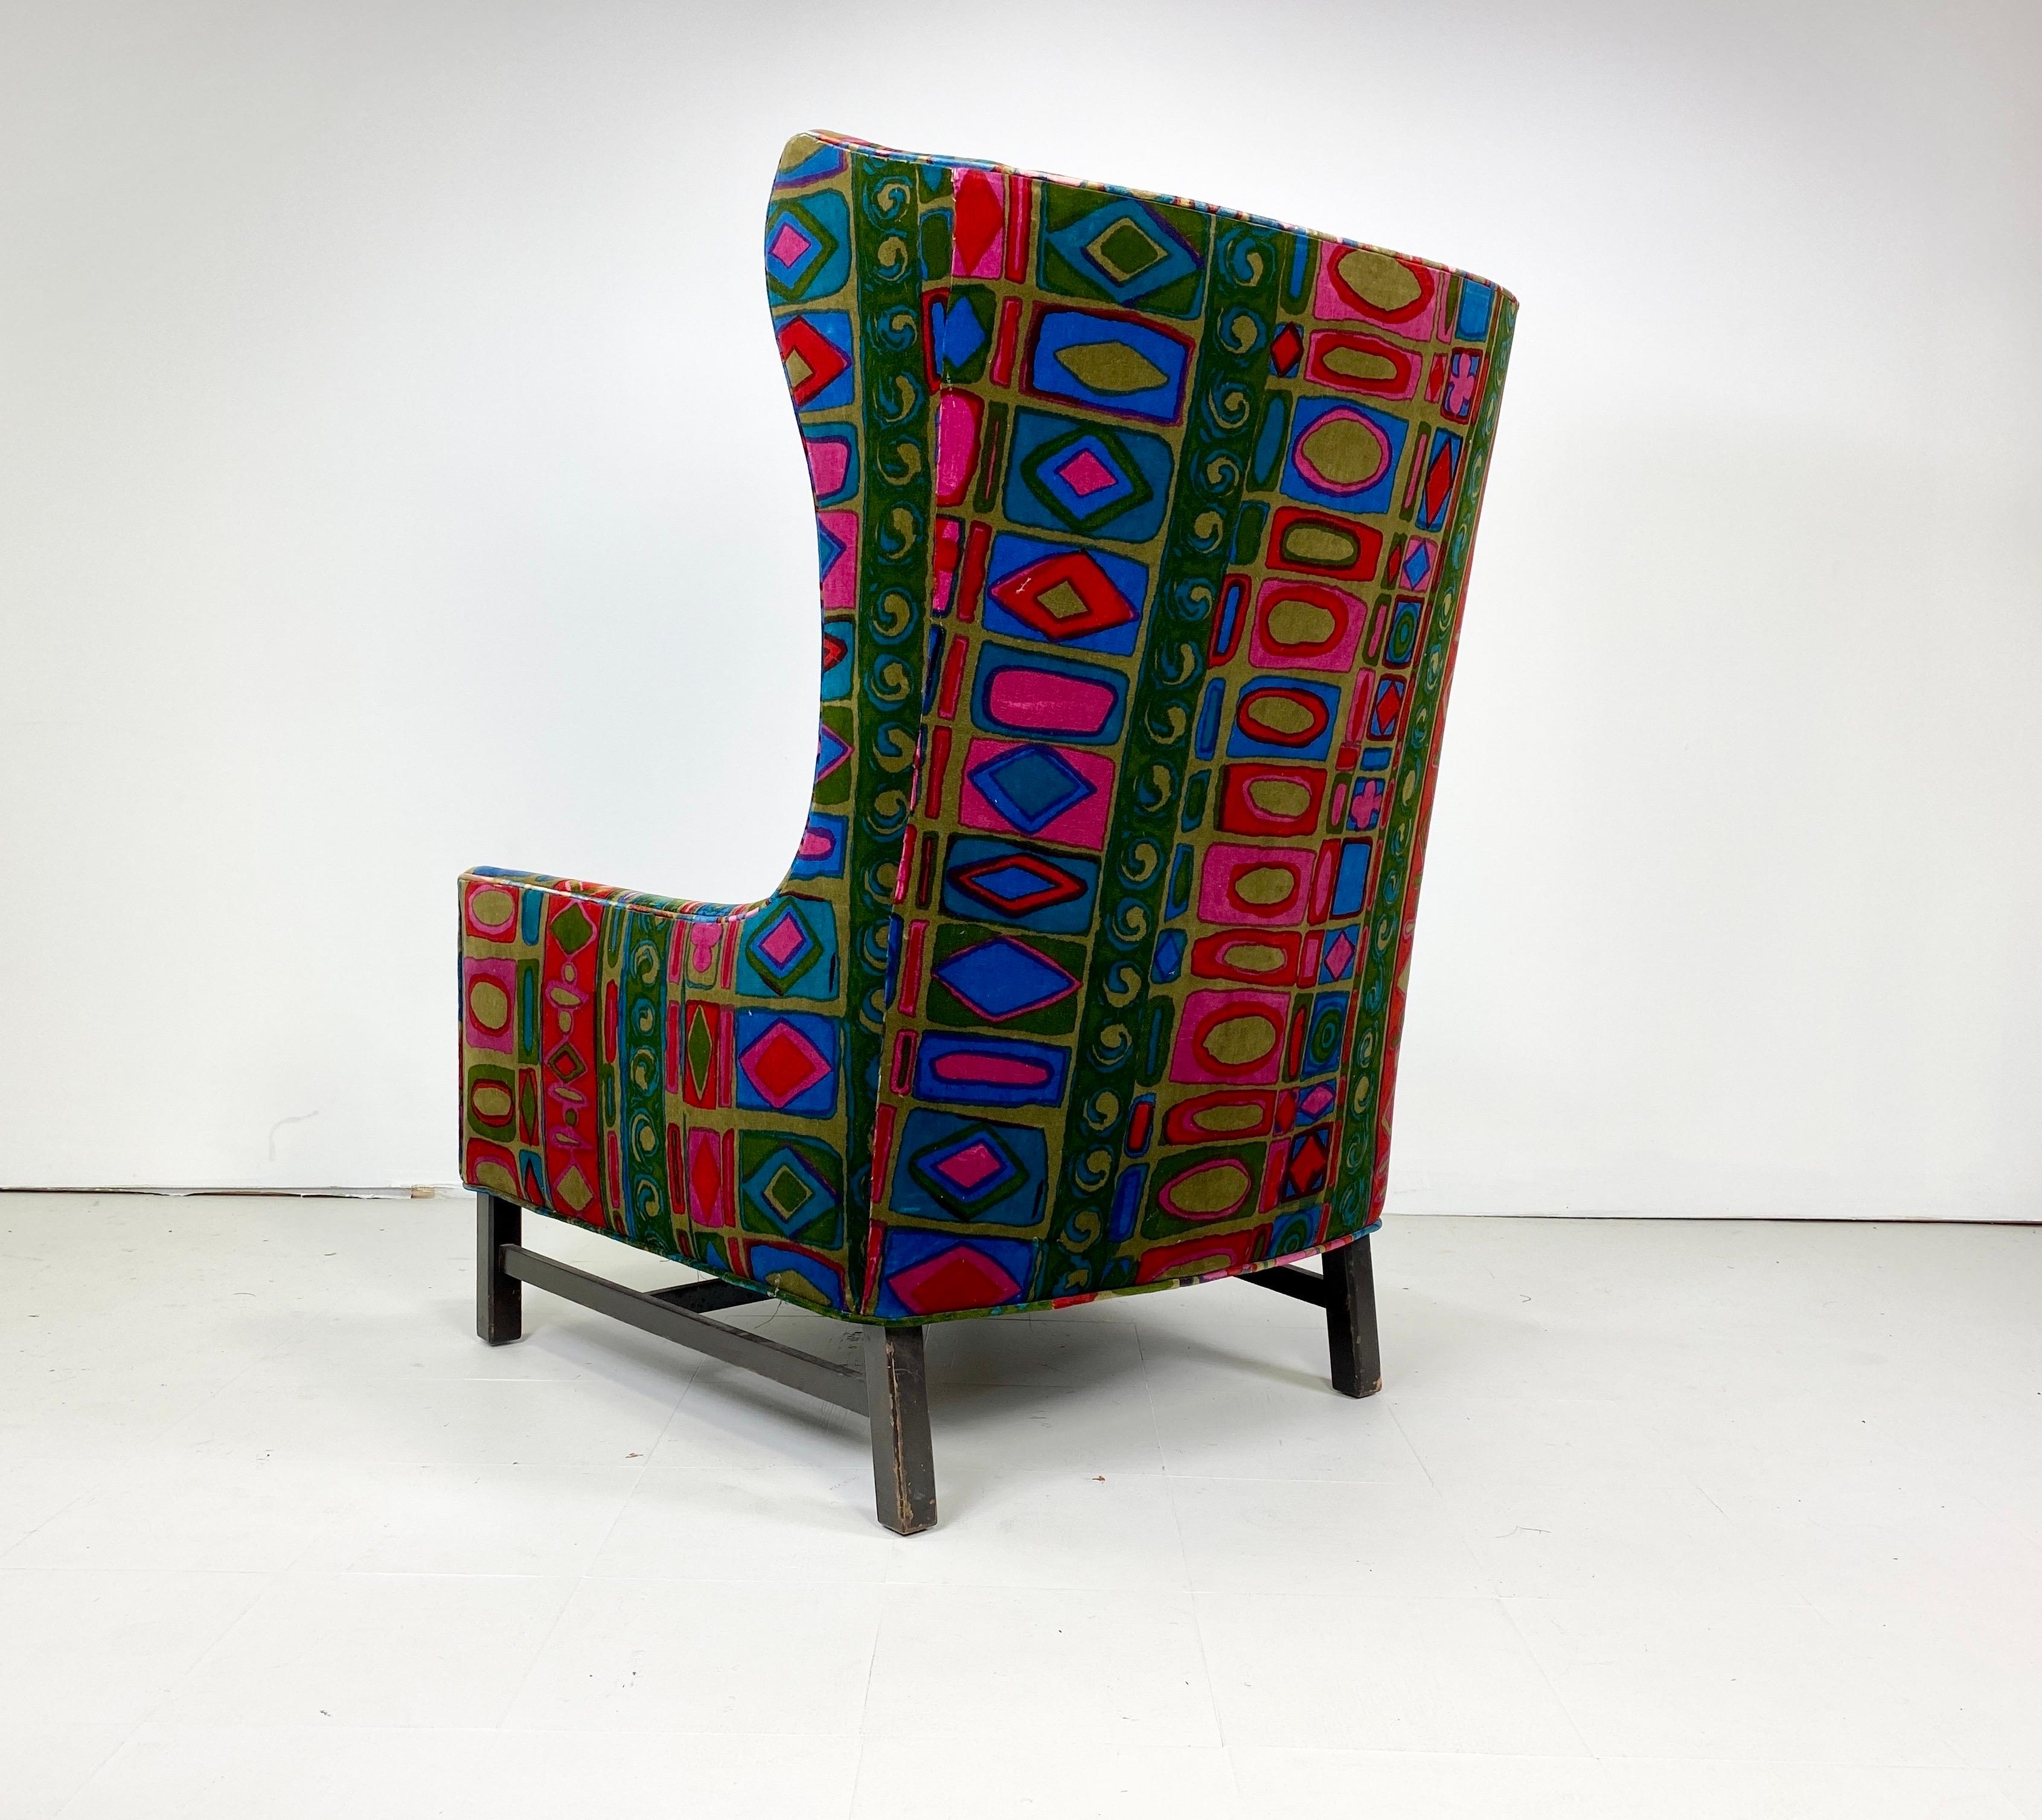 1960er Jahre Vintage Wing Back Lounge Chair, gepolstert in einem atemberaubenden Vintage Jack Lenor Larsen-Polsterung. Sockel aus gebeiztem Nussbaumholz.

Lieferung in den Großraum NYC für 425 $. Bitte anfragen.